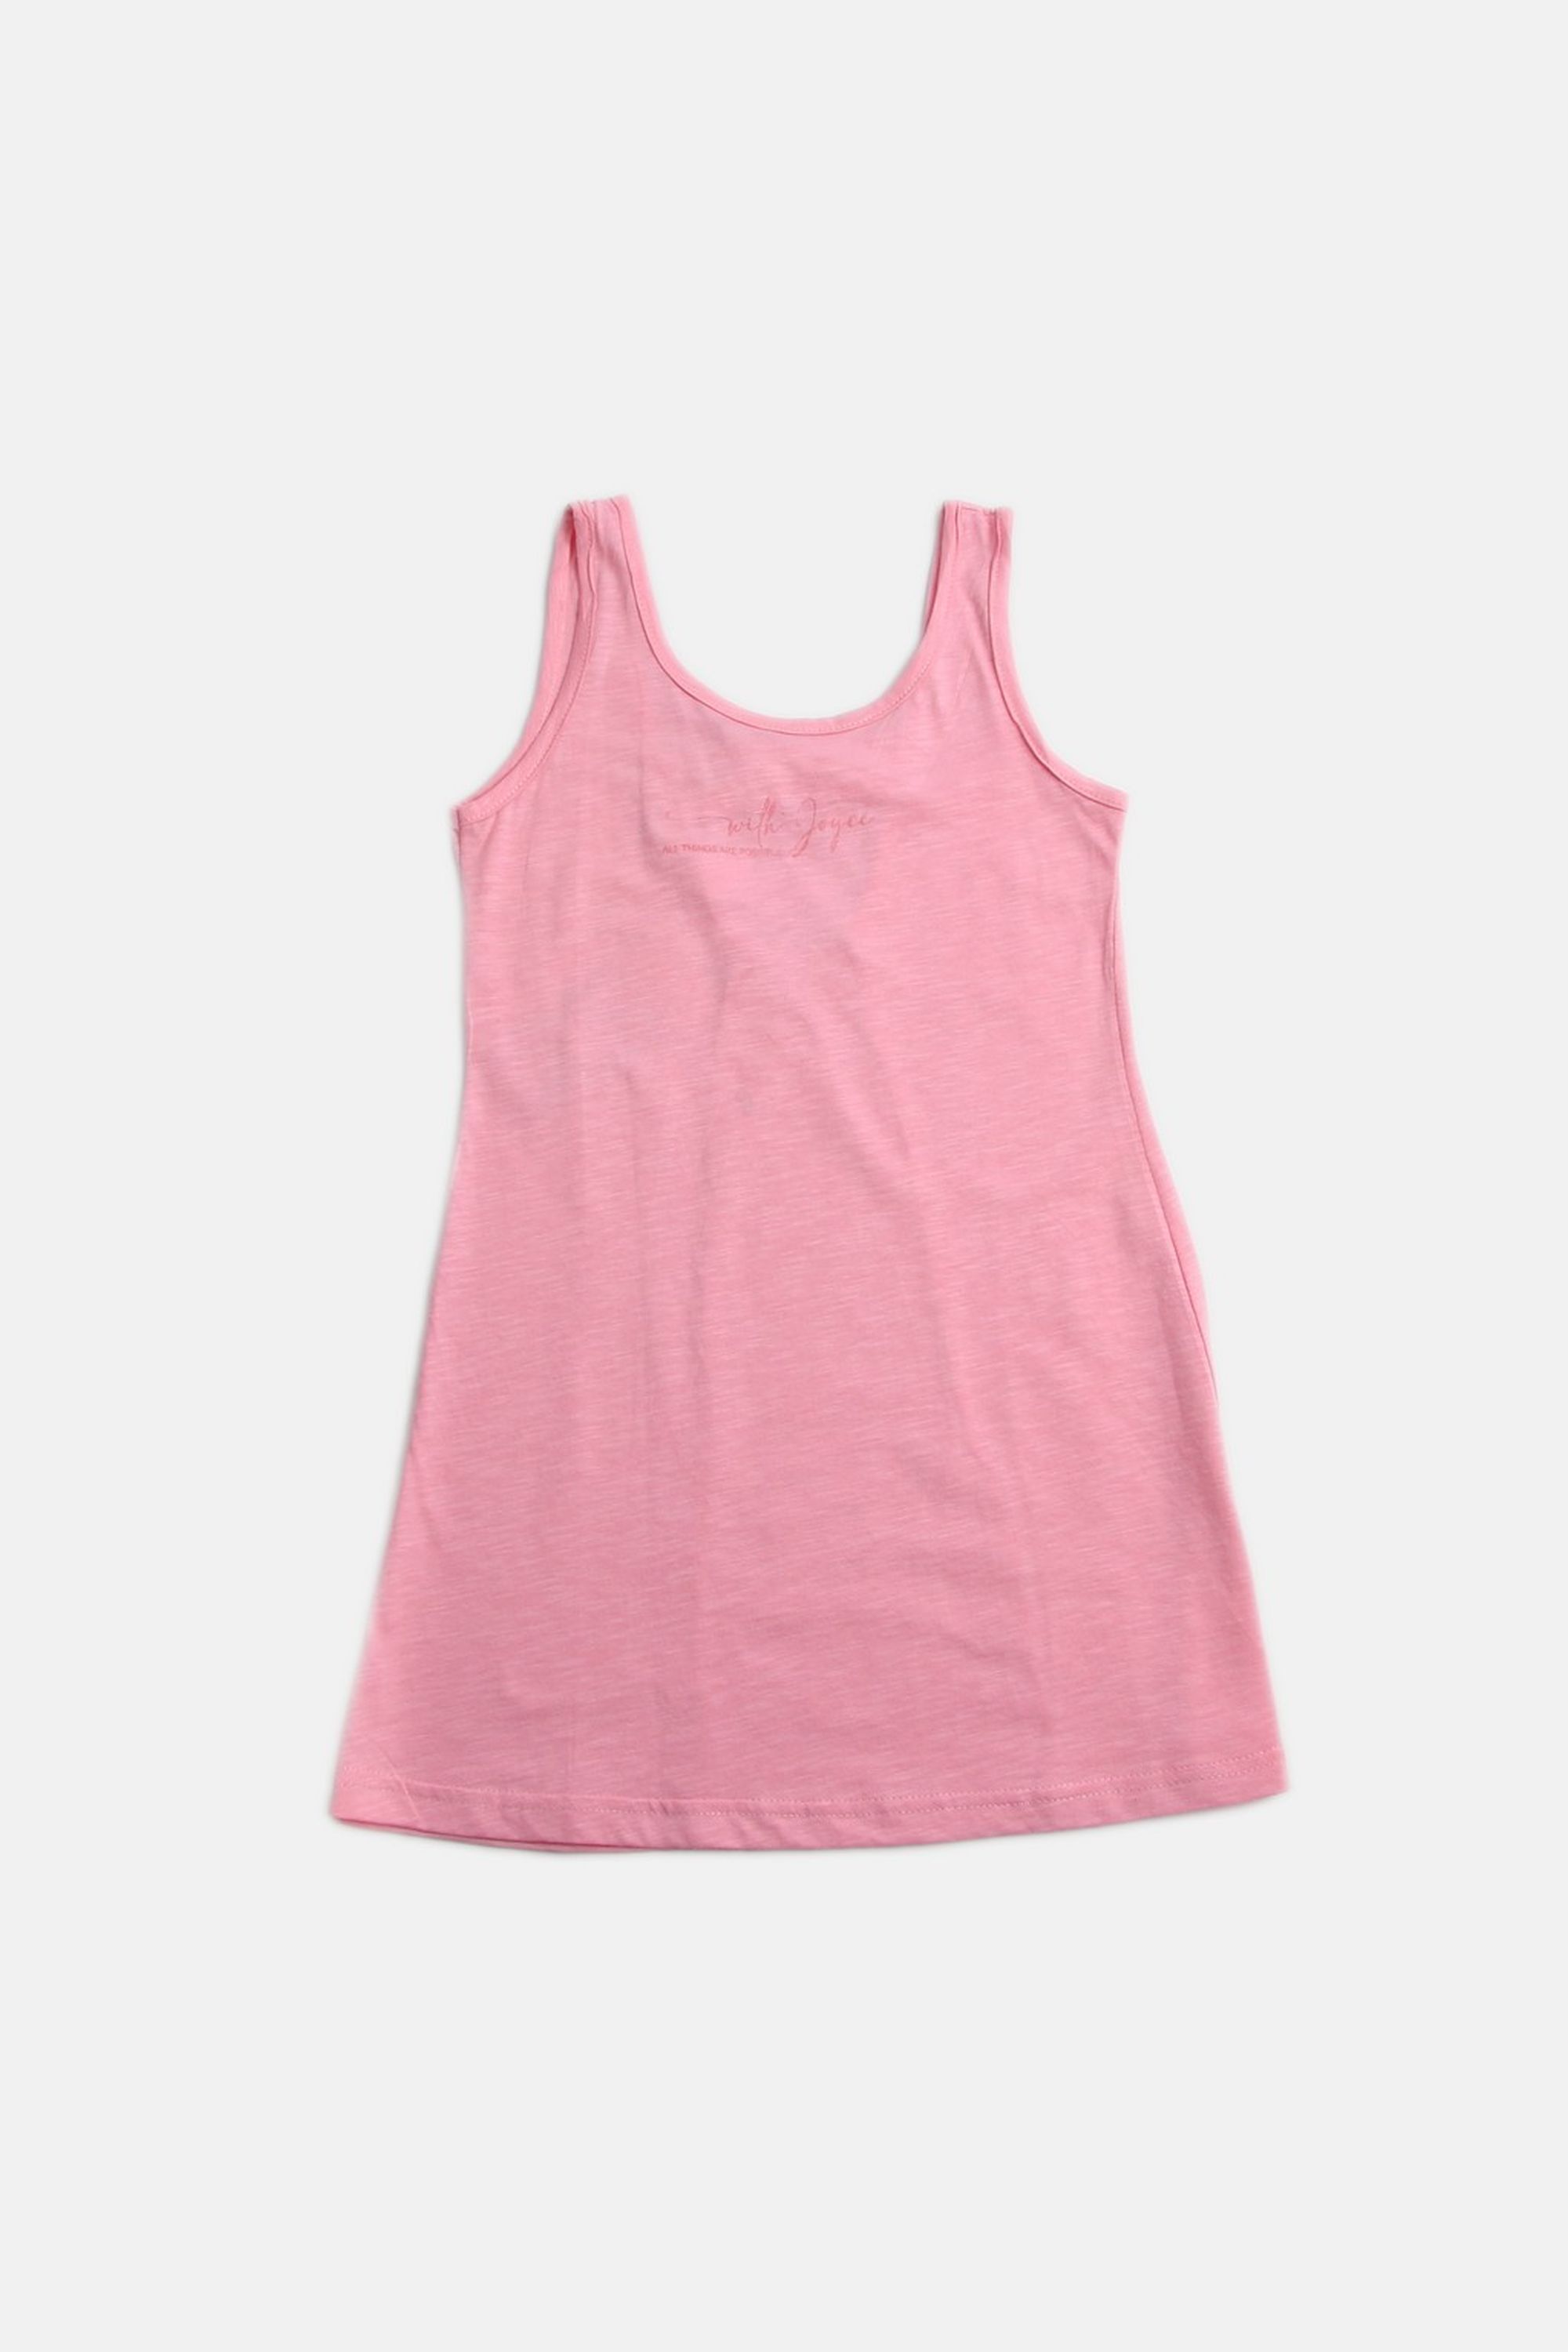 Dívčí bavlněné šaty "DRESS SIMPLE"/Růžová, zelená Barva: Růžová, Velikost: vel. 6 (114/120 cm)